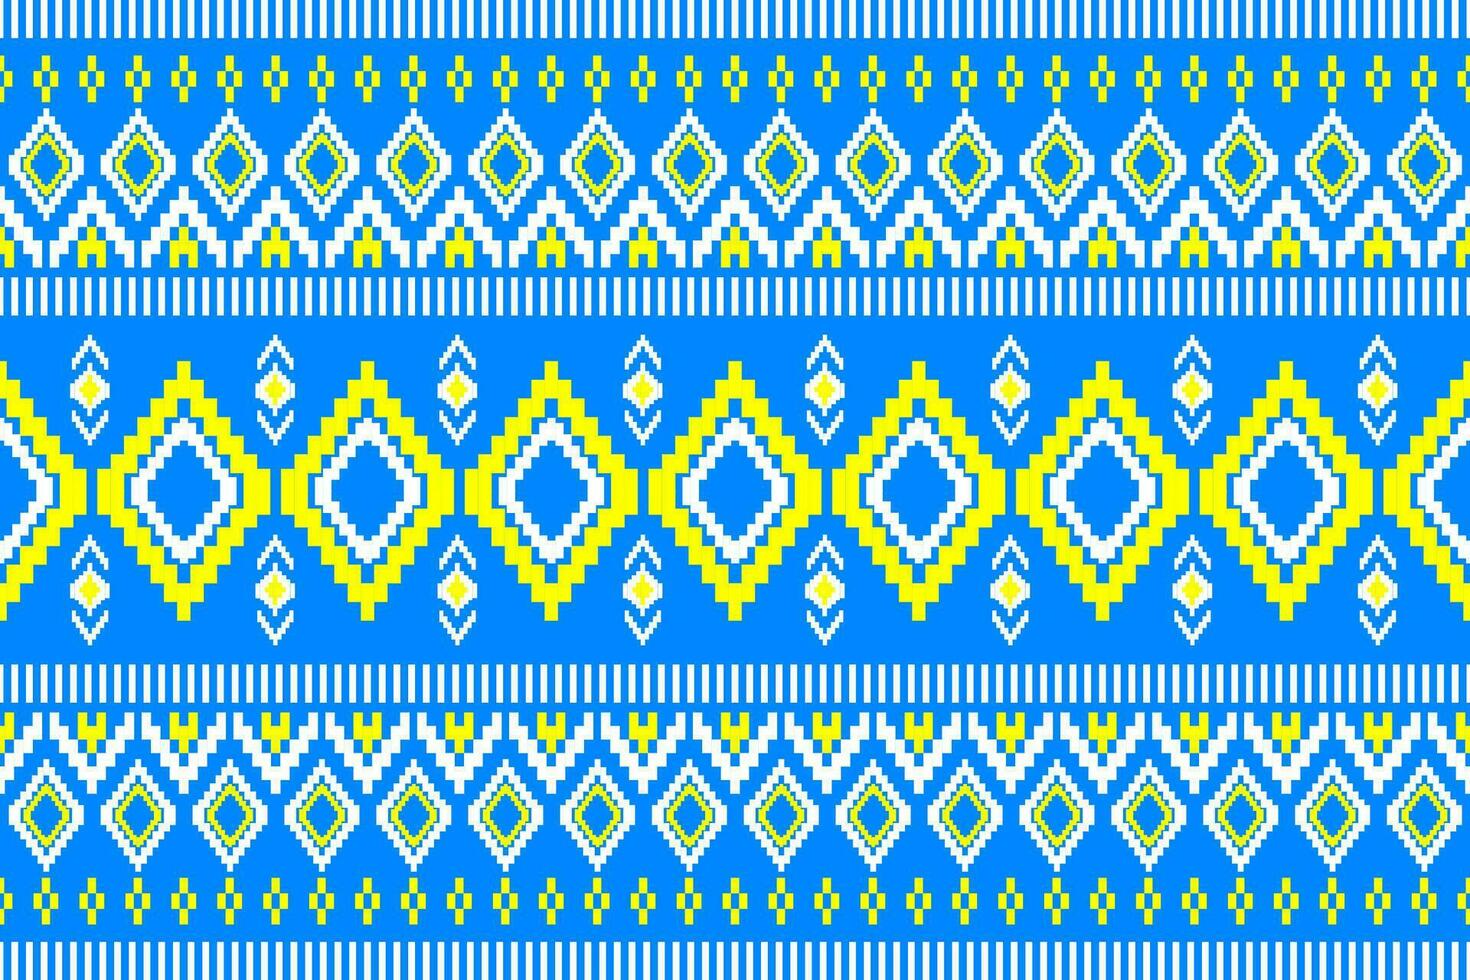 meetkundig naadloos etnisch patroon. meetkundig etnisch patroon kan worden gebruikt in kleding stof ontwerp voor kleren, decoratief papier, inpakken, textiel, borduurwerk, tapijt, tribal patroon vector